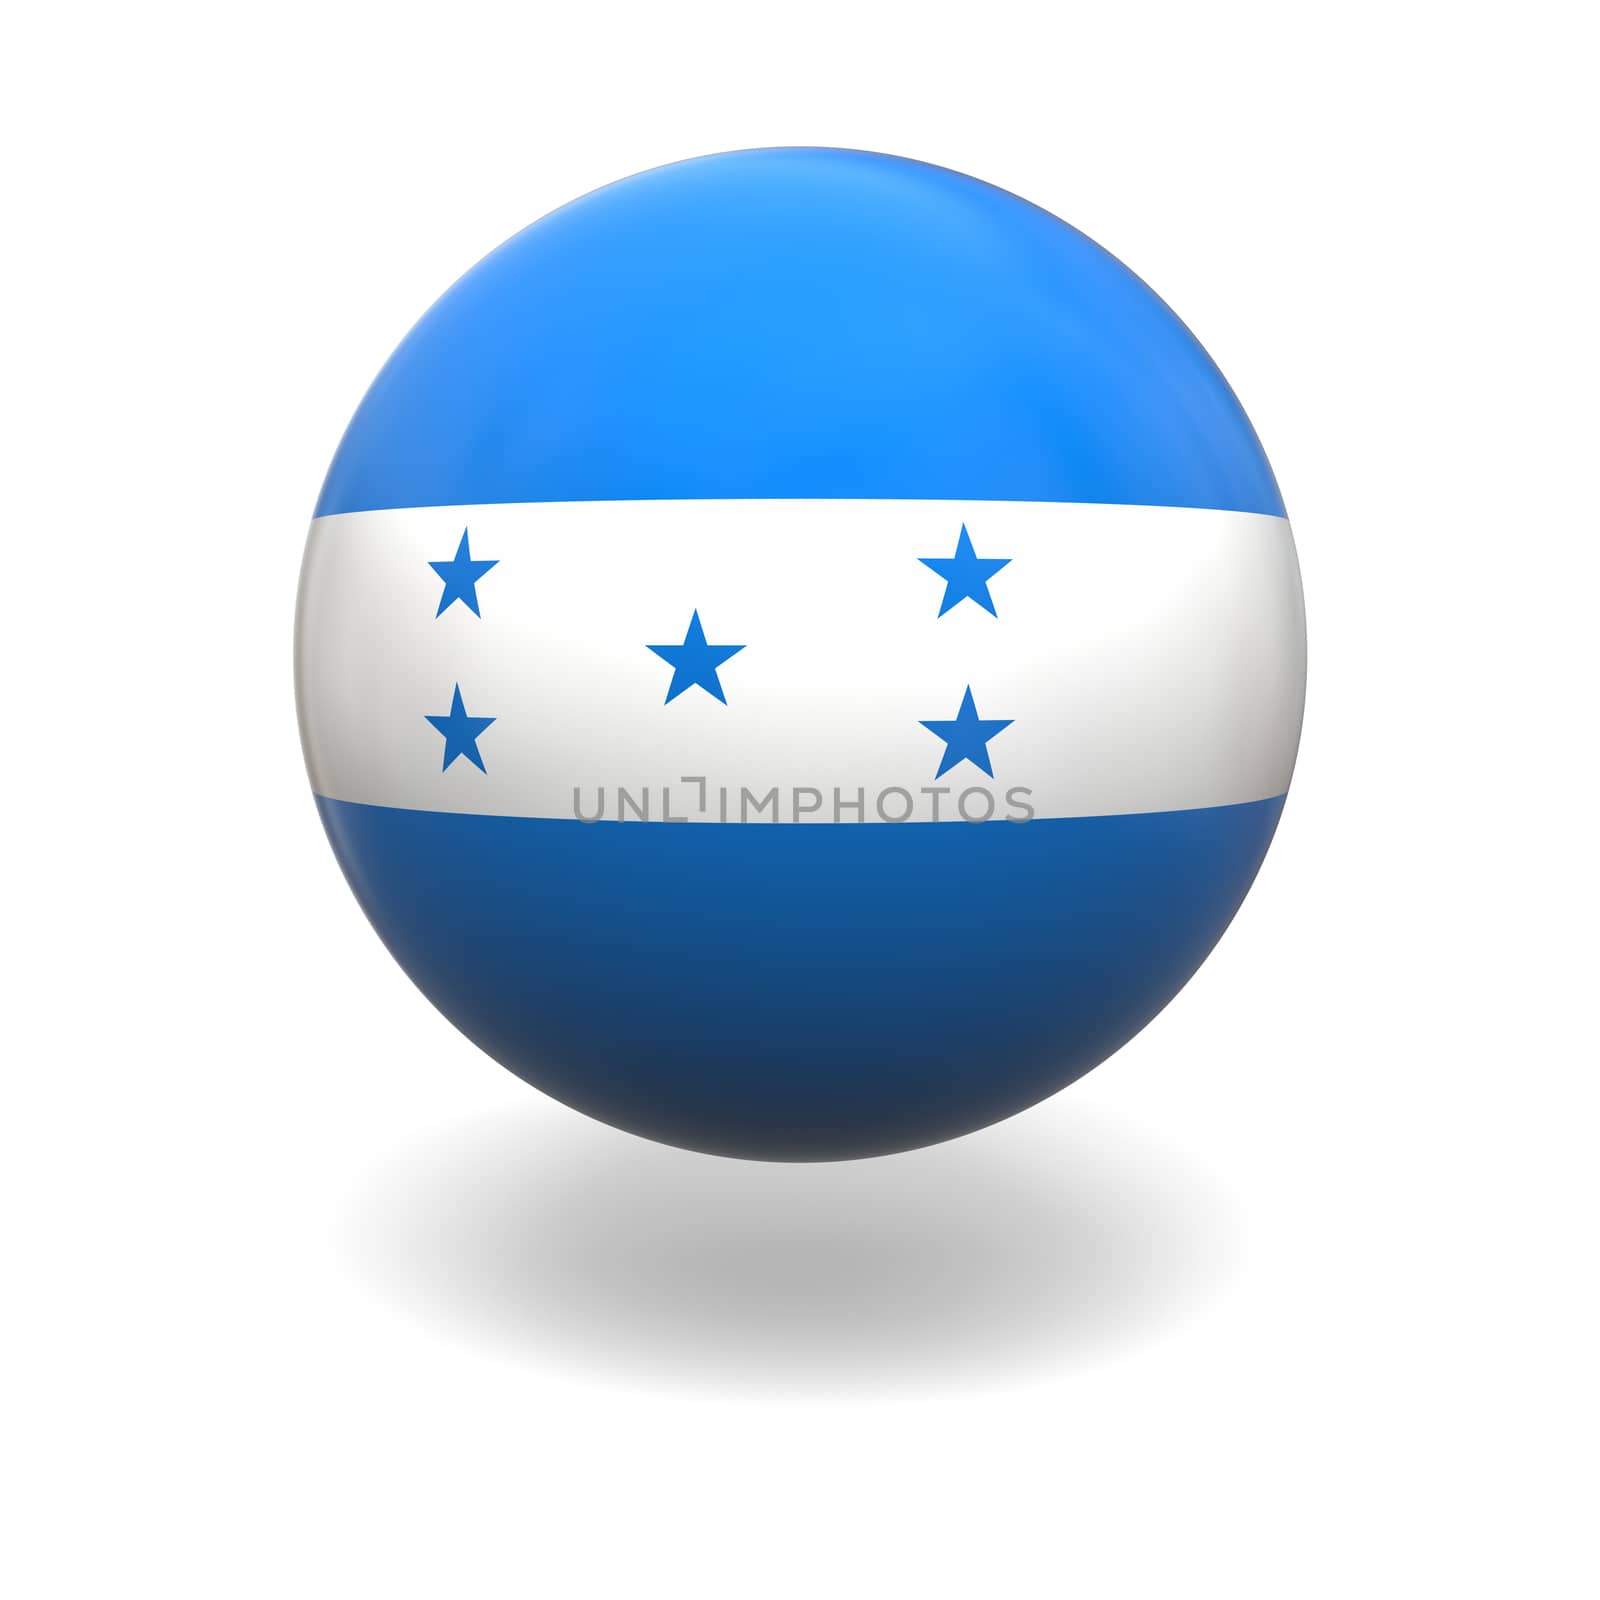 Honduras flag by Harvepino